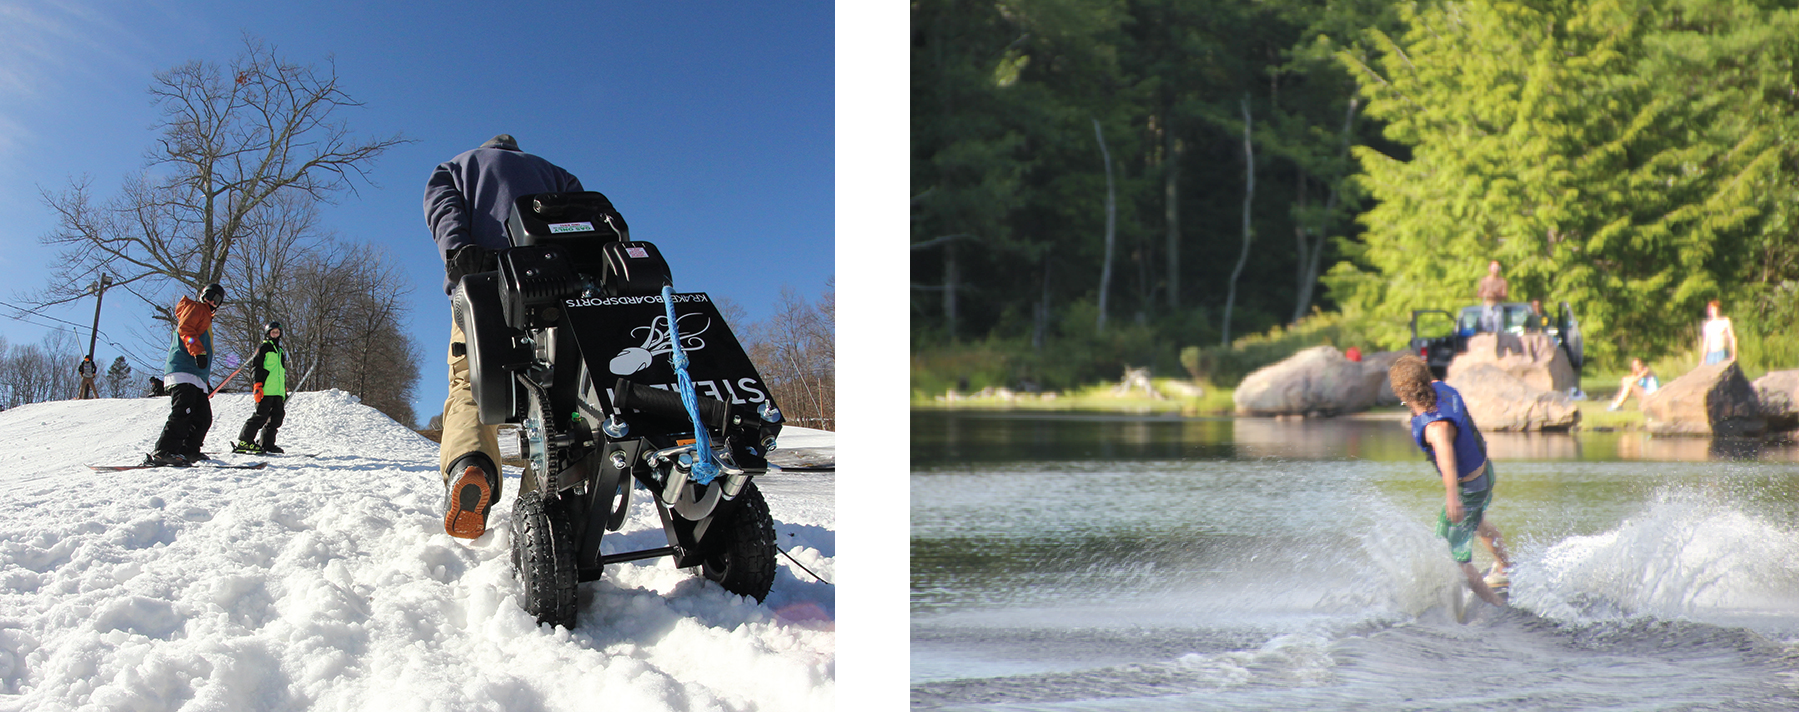 Une photographie montre une personne escaladant une colline enneigée avec un treuil sur roues. Une photographie montre une personne faisant du ski sur un lac.